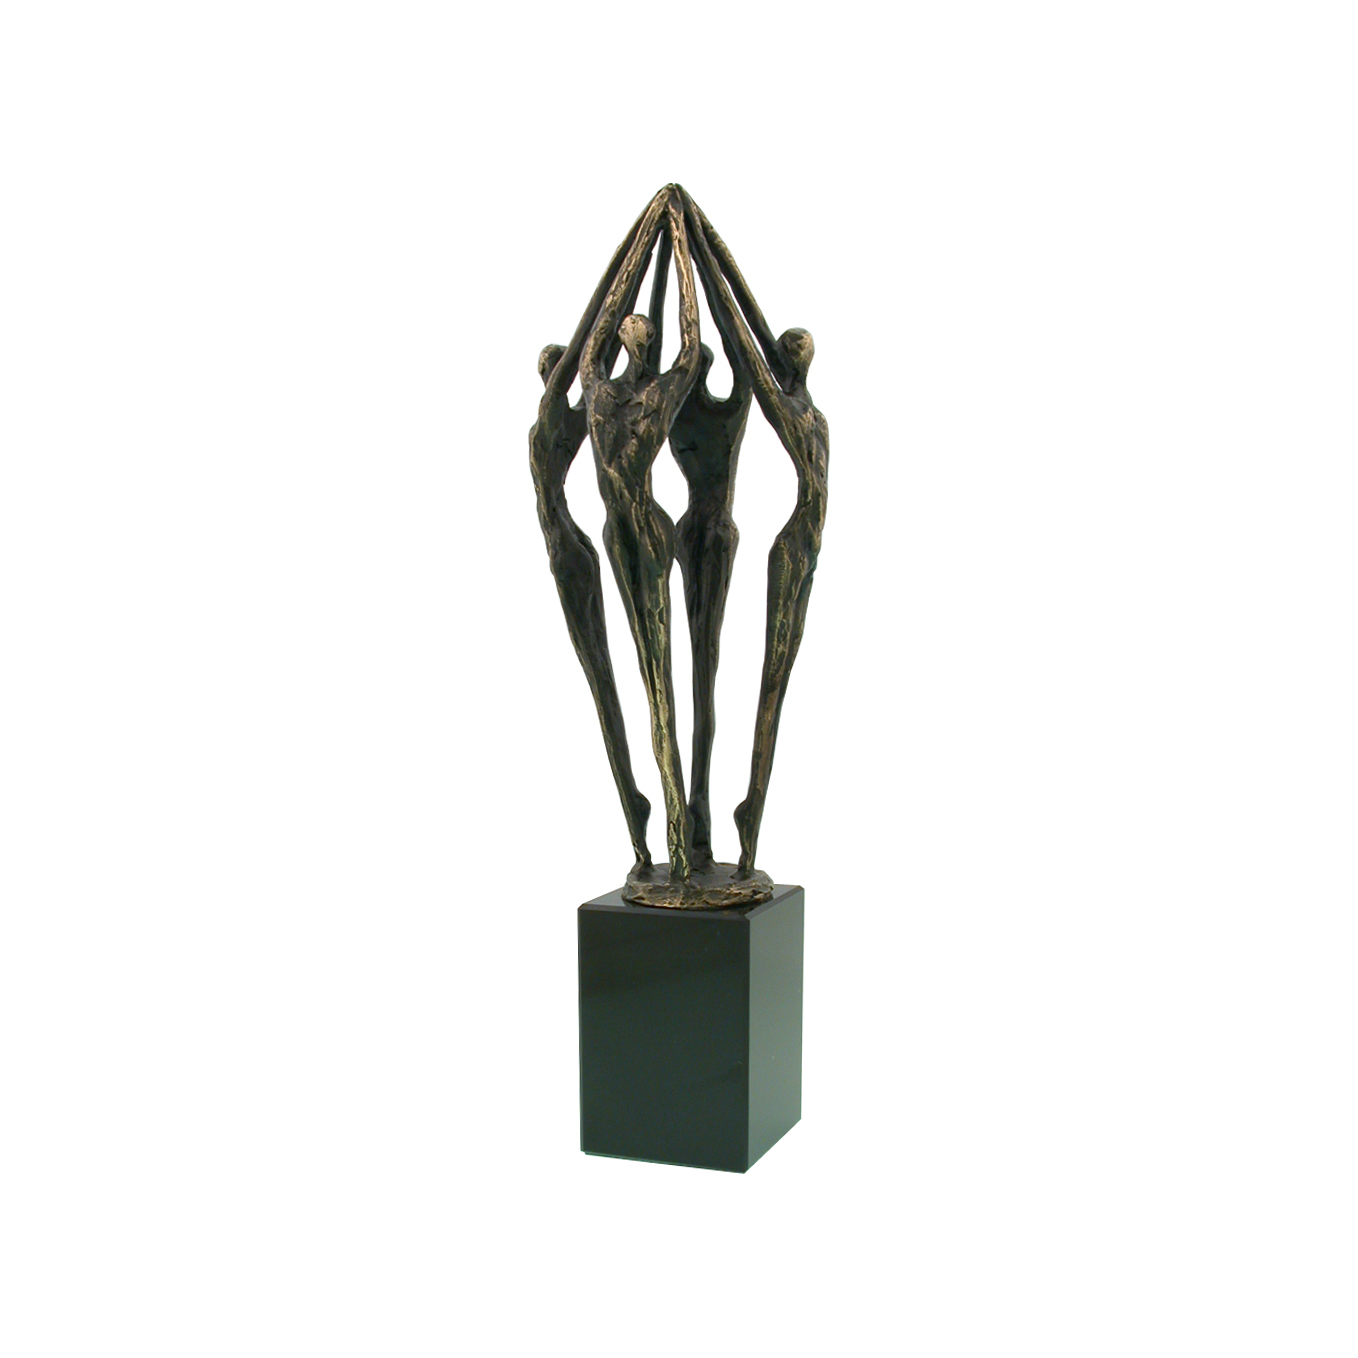 bronzen-award-reaching-to-the-top-03-01-04-metalen-awards-bronzen-awards-334sb.jpg